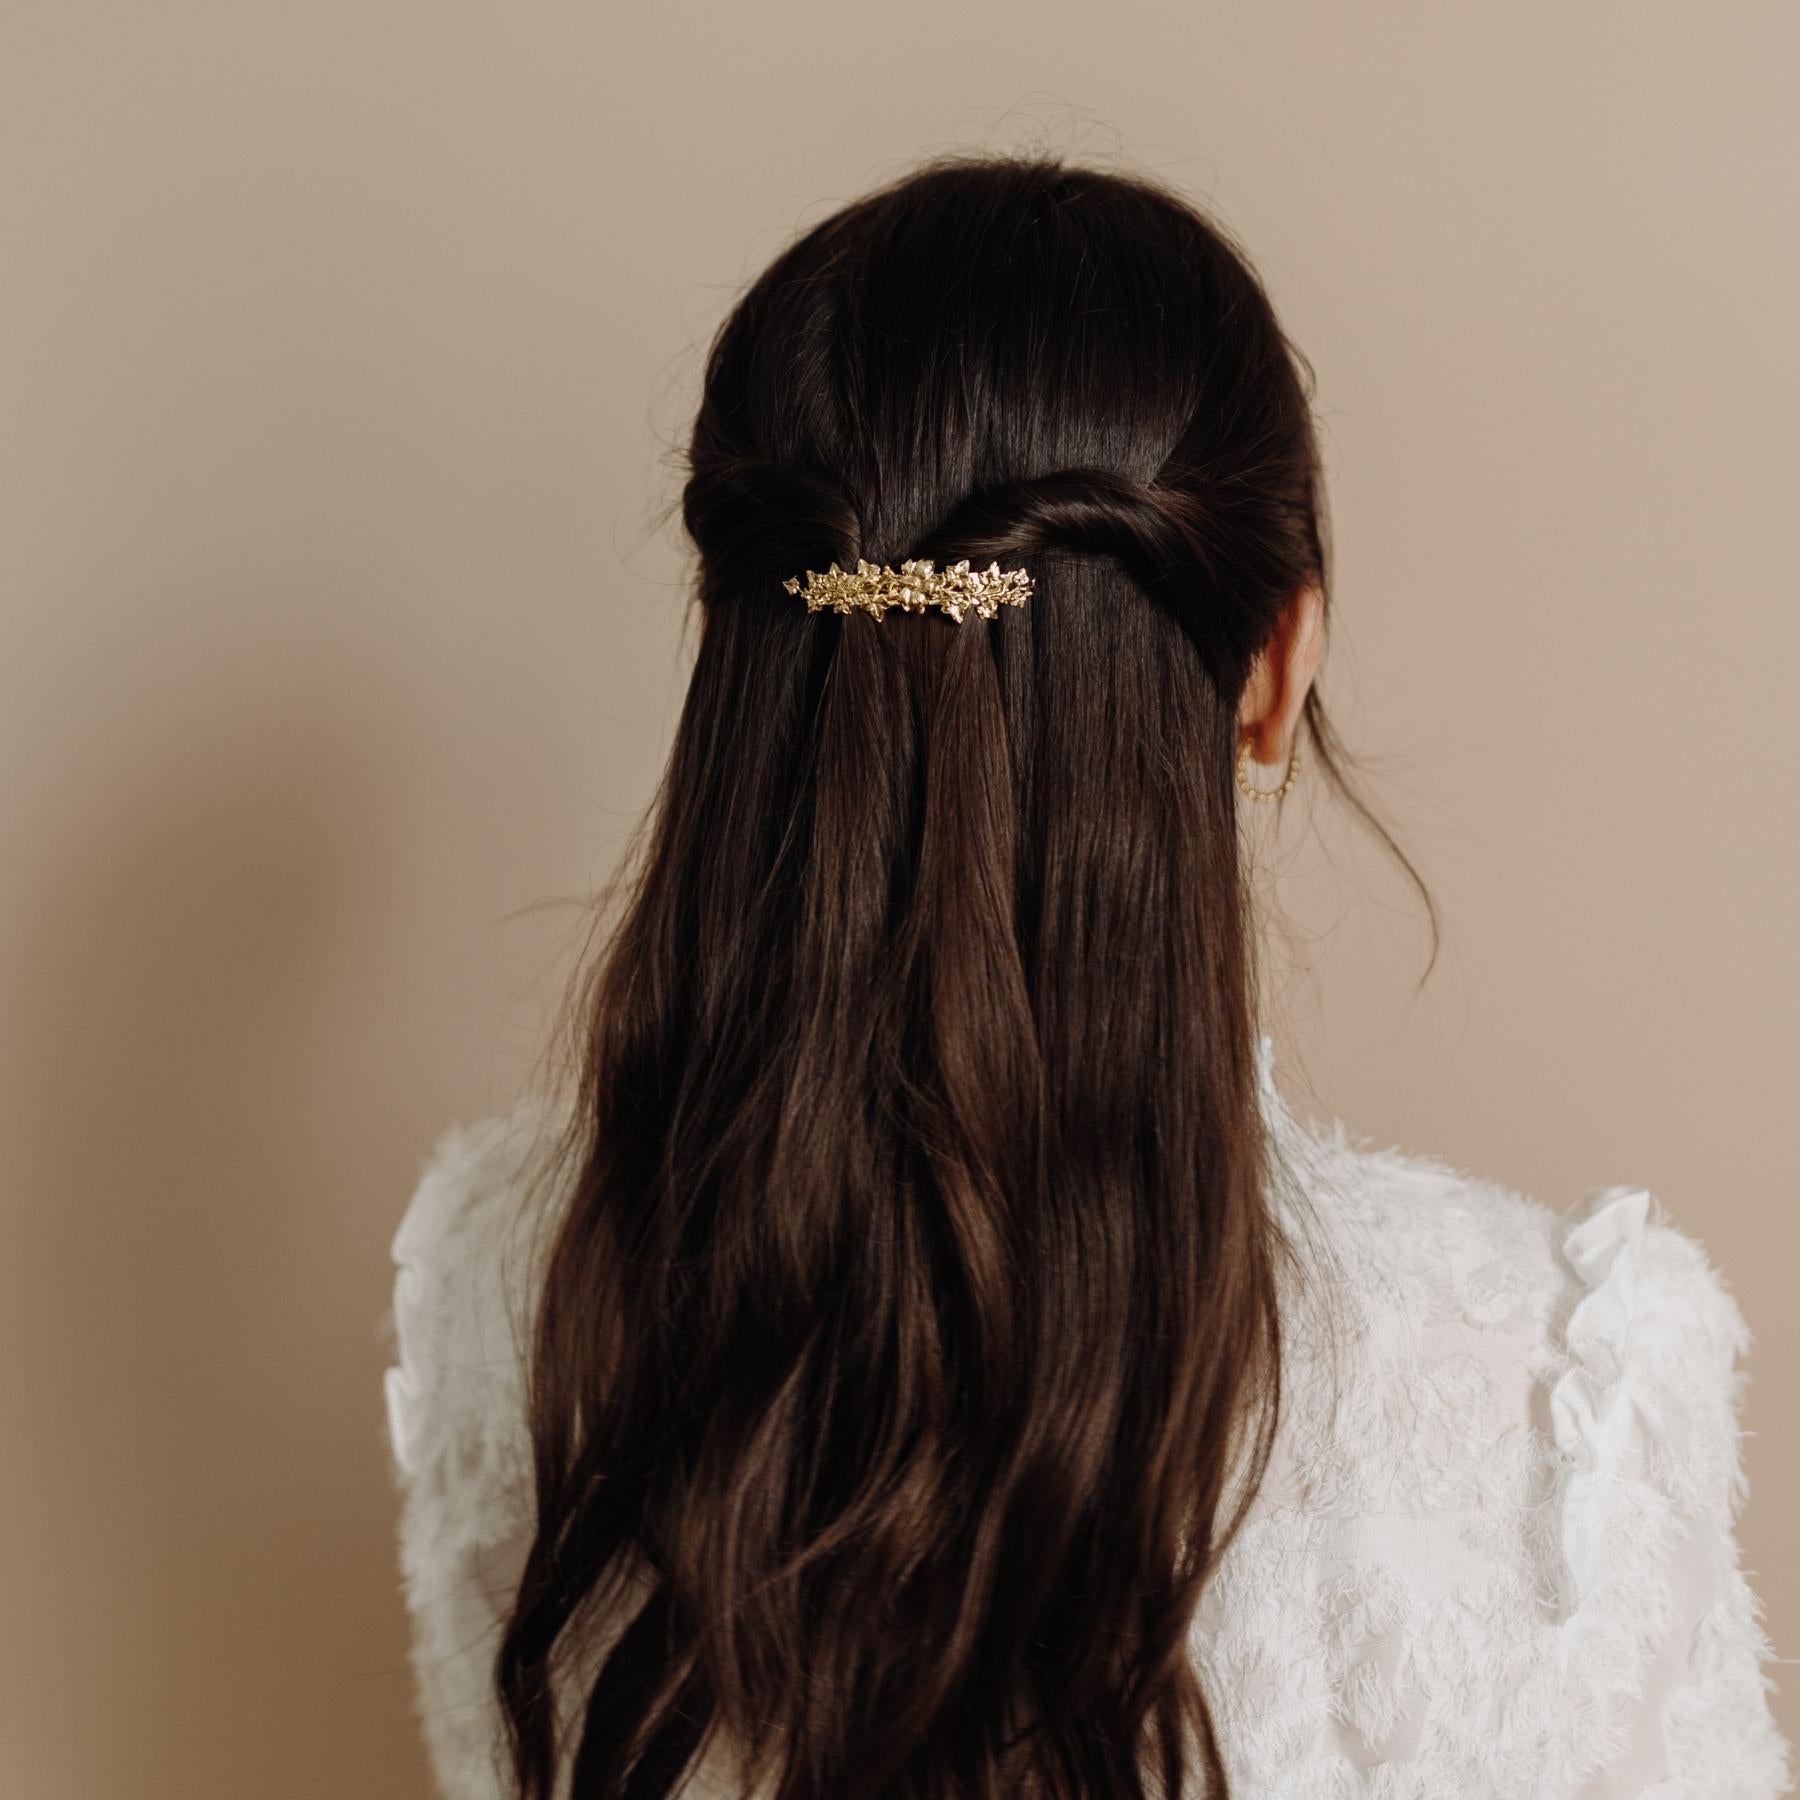 Femme cheveux longs coiffée avec une petite barrette dorée fleurie